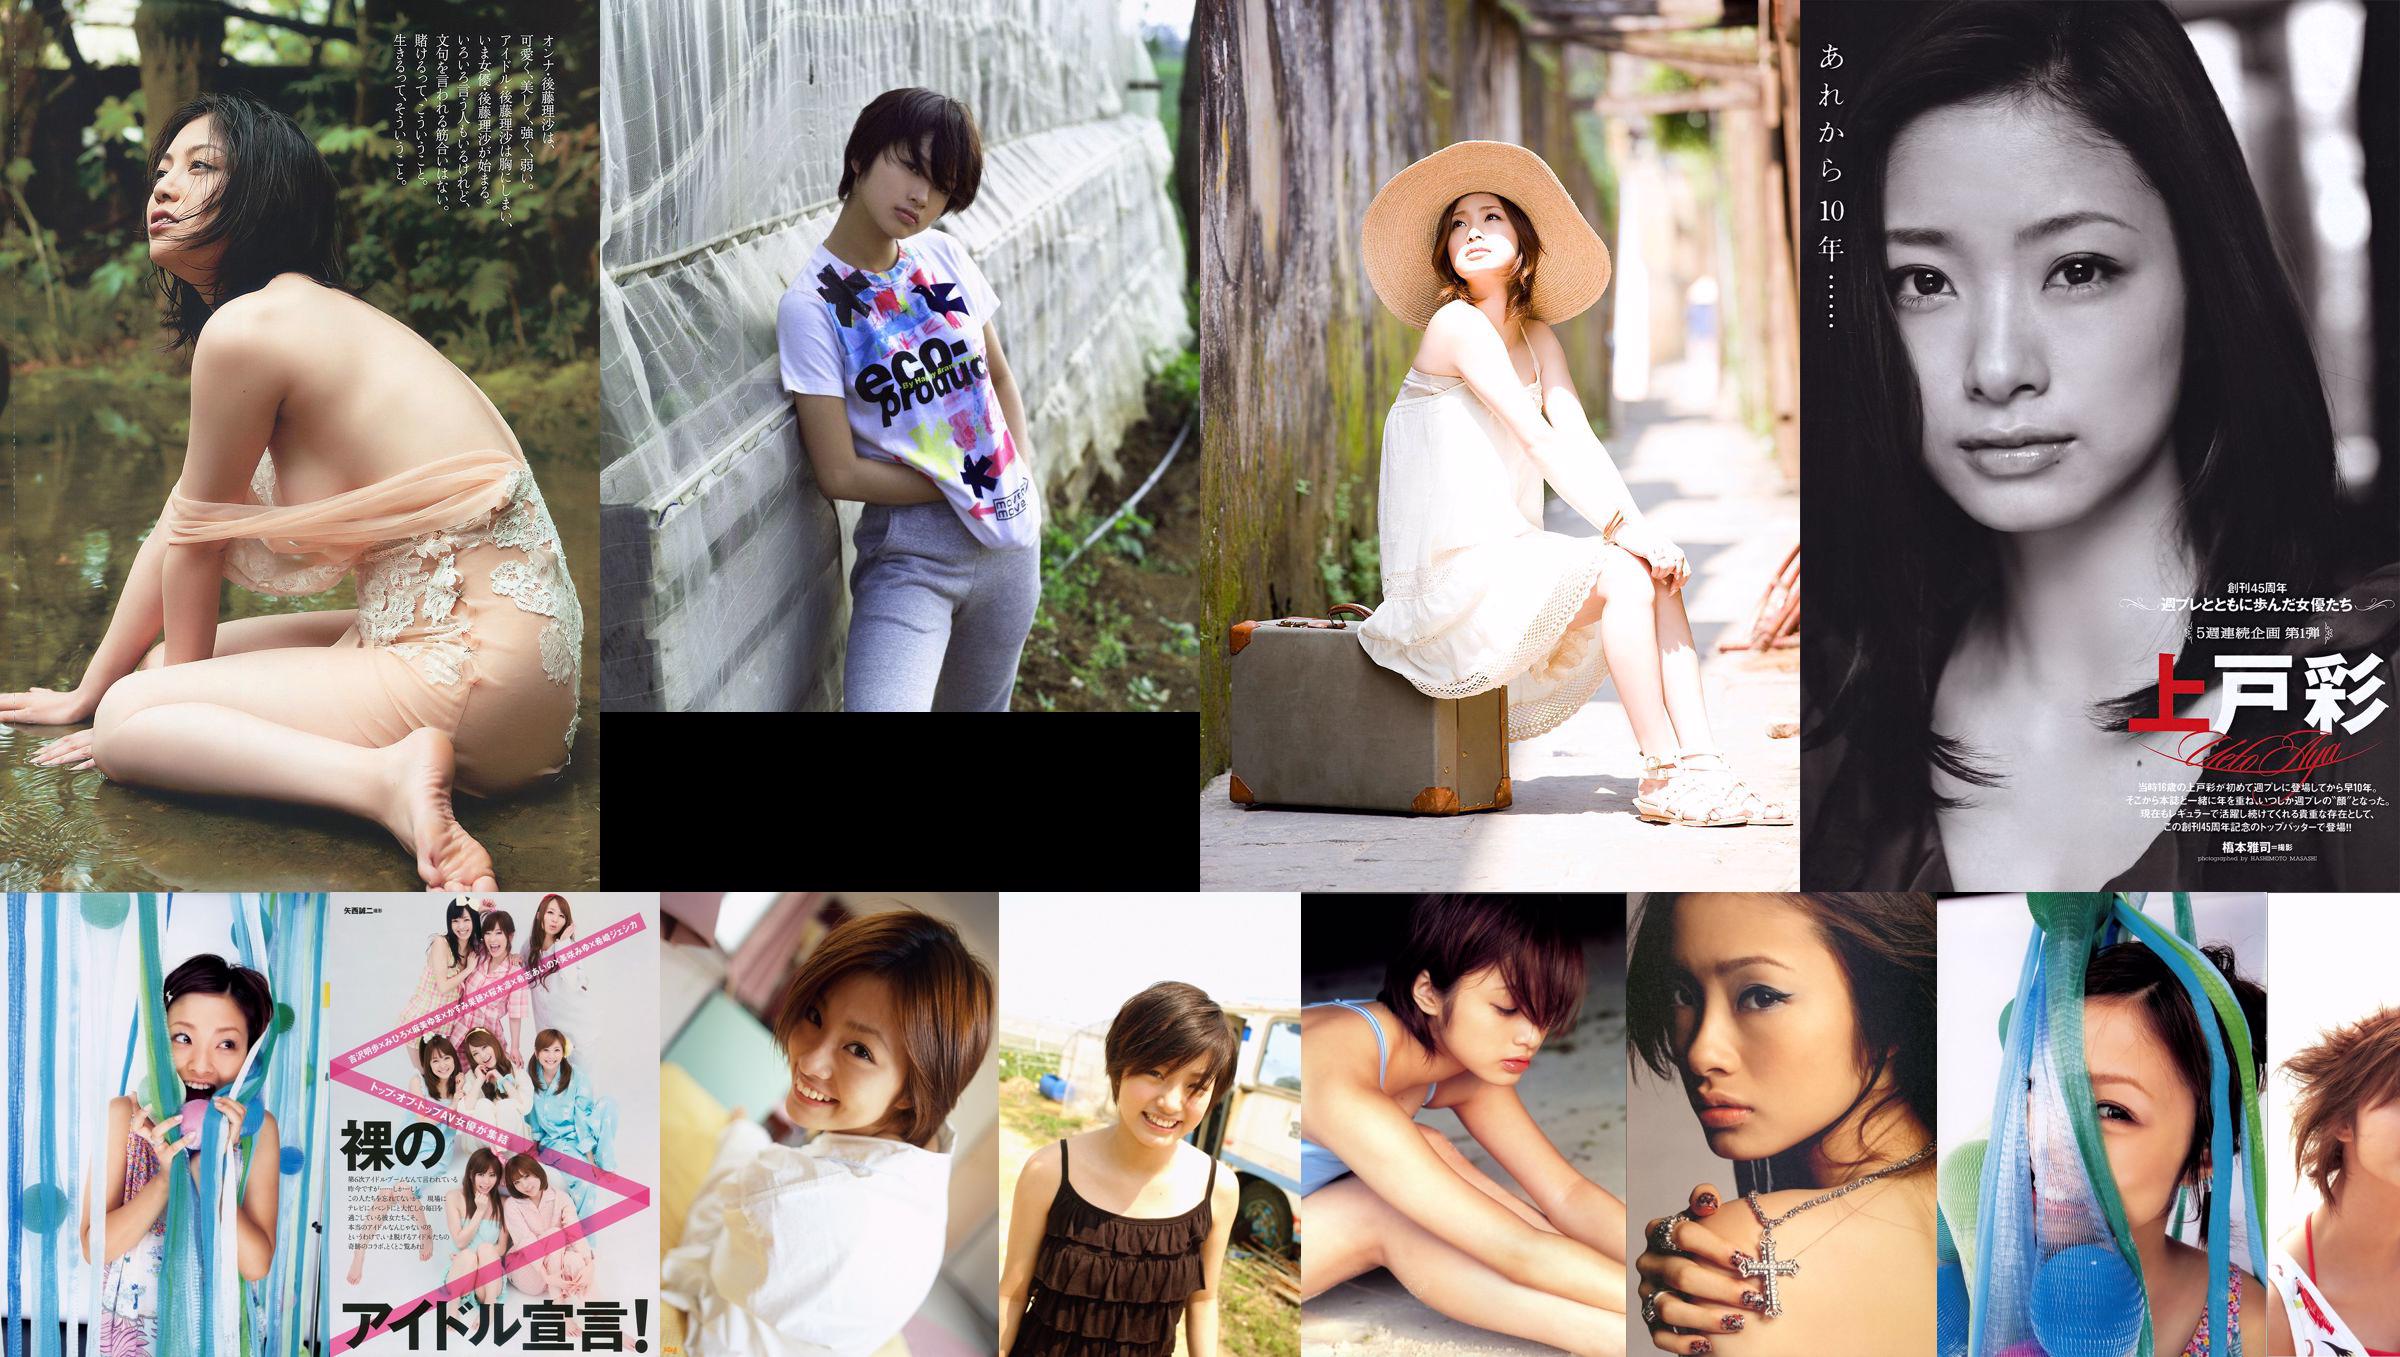 Aya Uedo, Aizawa, Kafei, AKB48 Shiraishi Miho, Goto Risa [Wekelijkse Playboy] 2010 No.19-20 Photo Magazine No.3d2026 Pagina 7